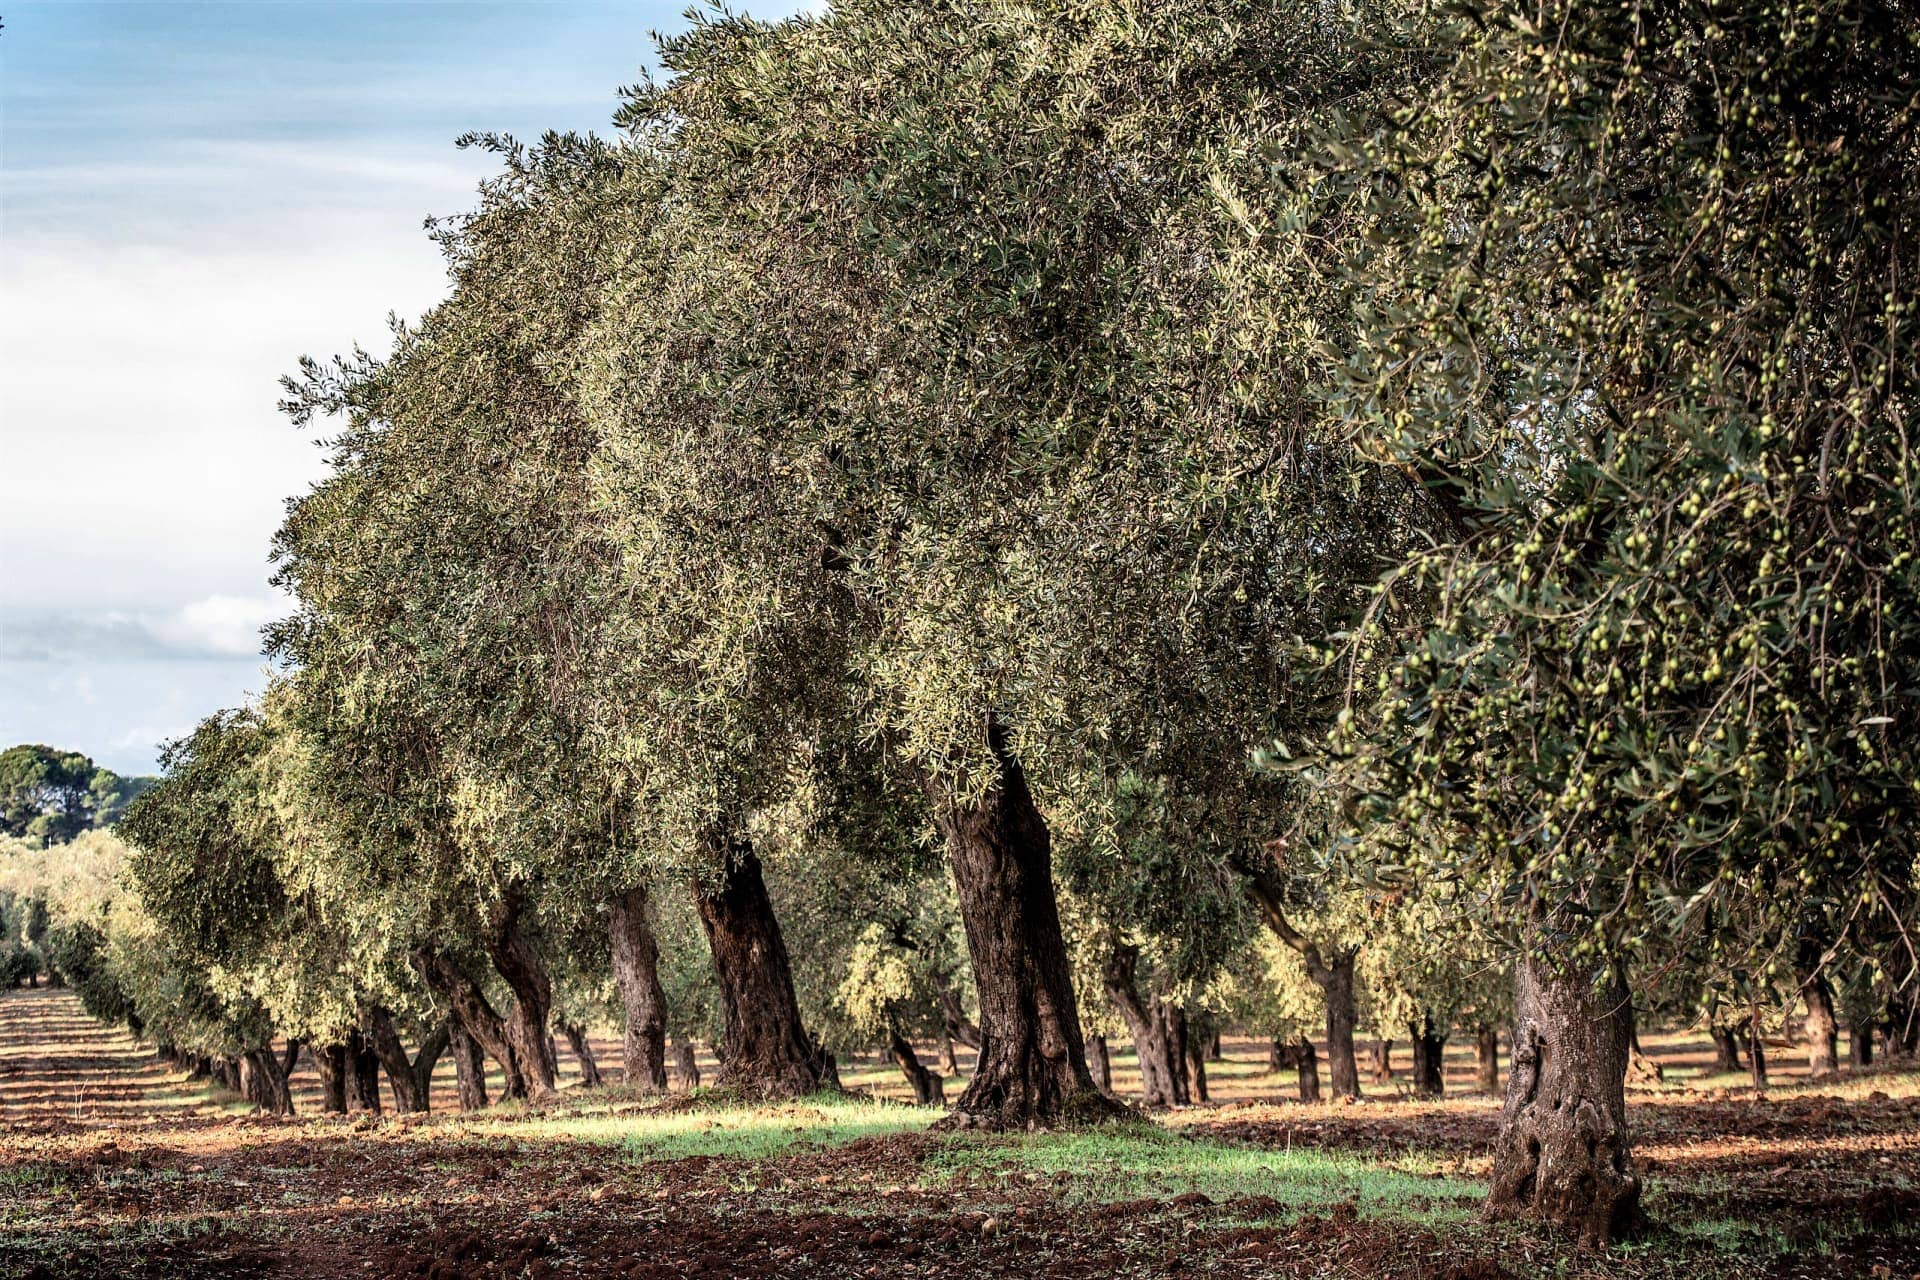 europe-profiles-лучшие-производители-оливкового масла-за-сан-джулиано-преследовать-качество-благодаря-инновациям-времени оливкового масла